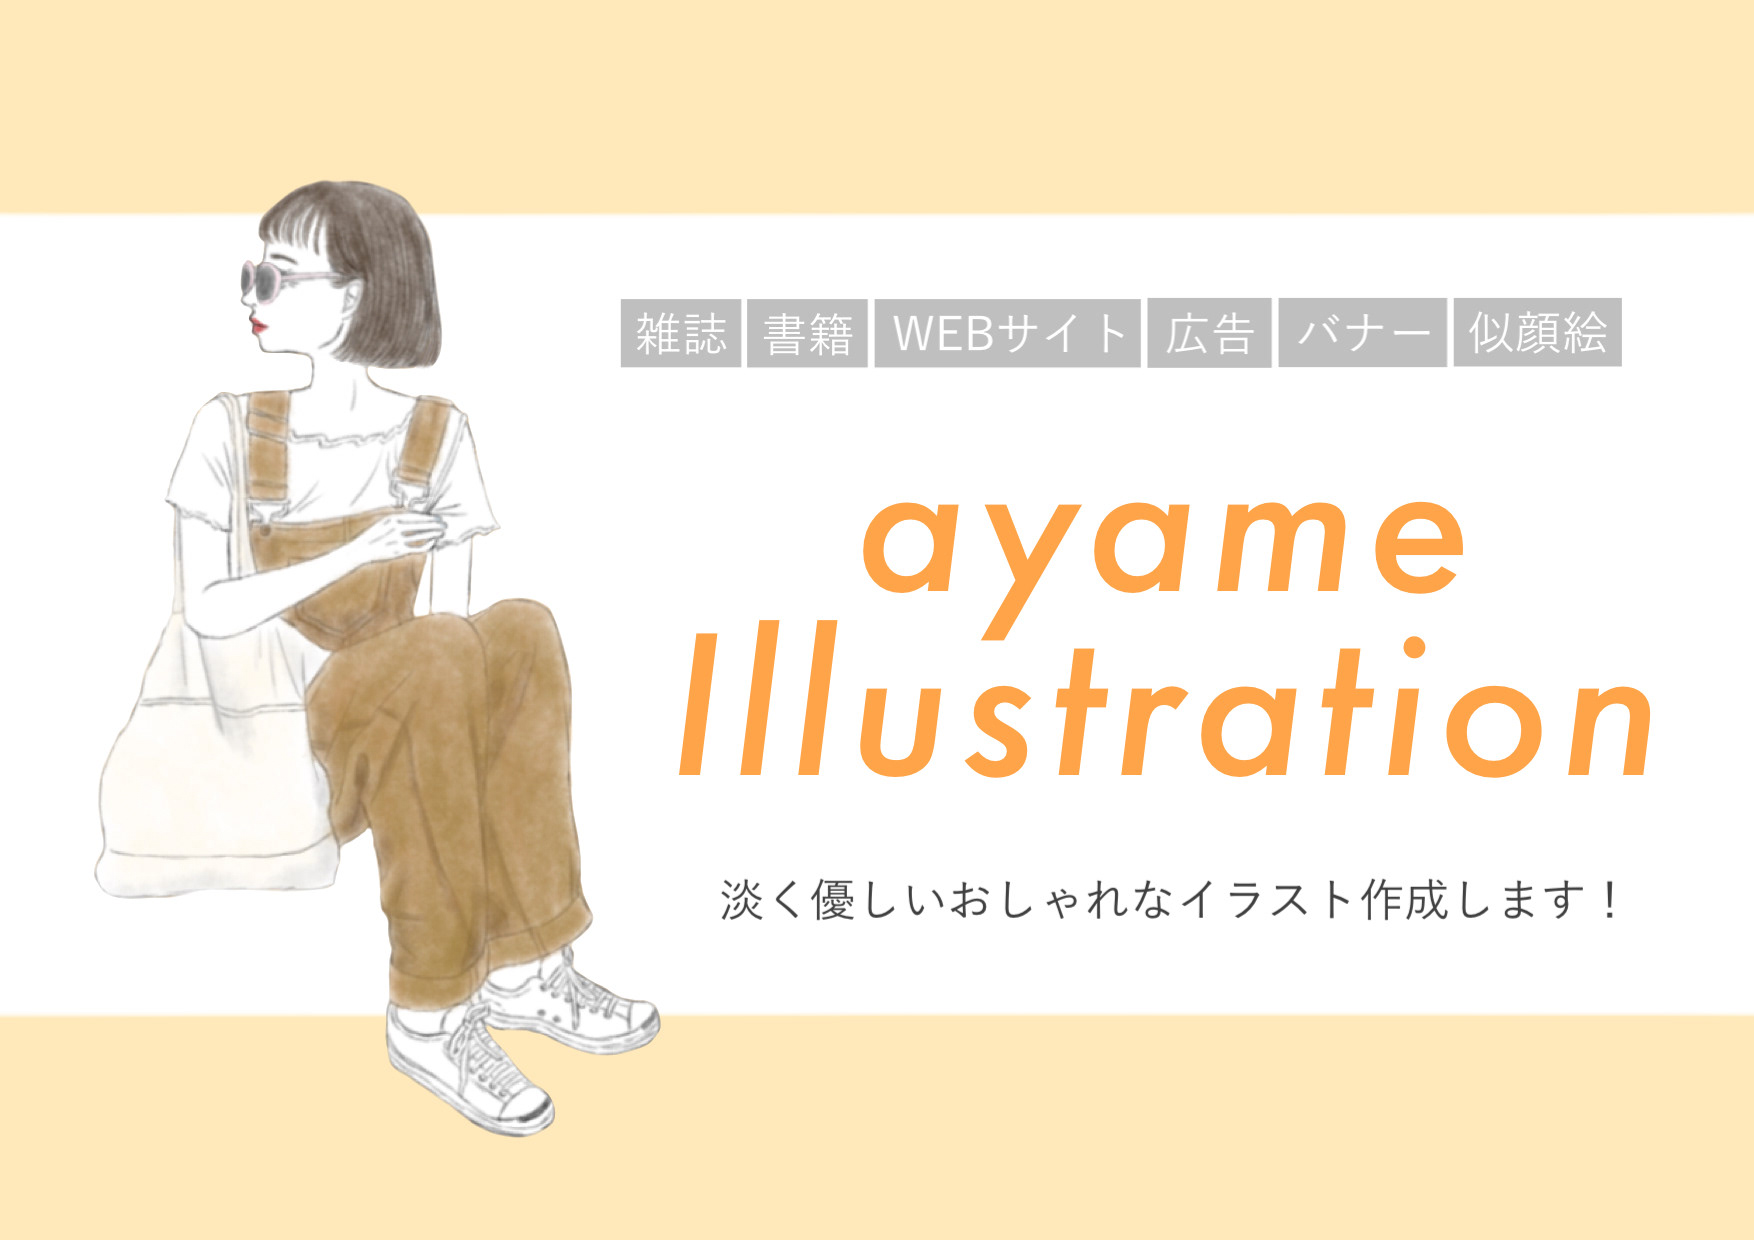 イラストレーターayame 女性向けのおしゃれなイラスト制作